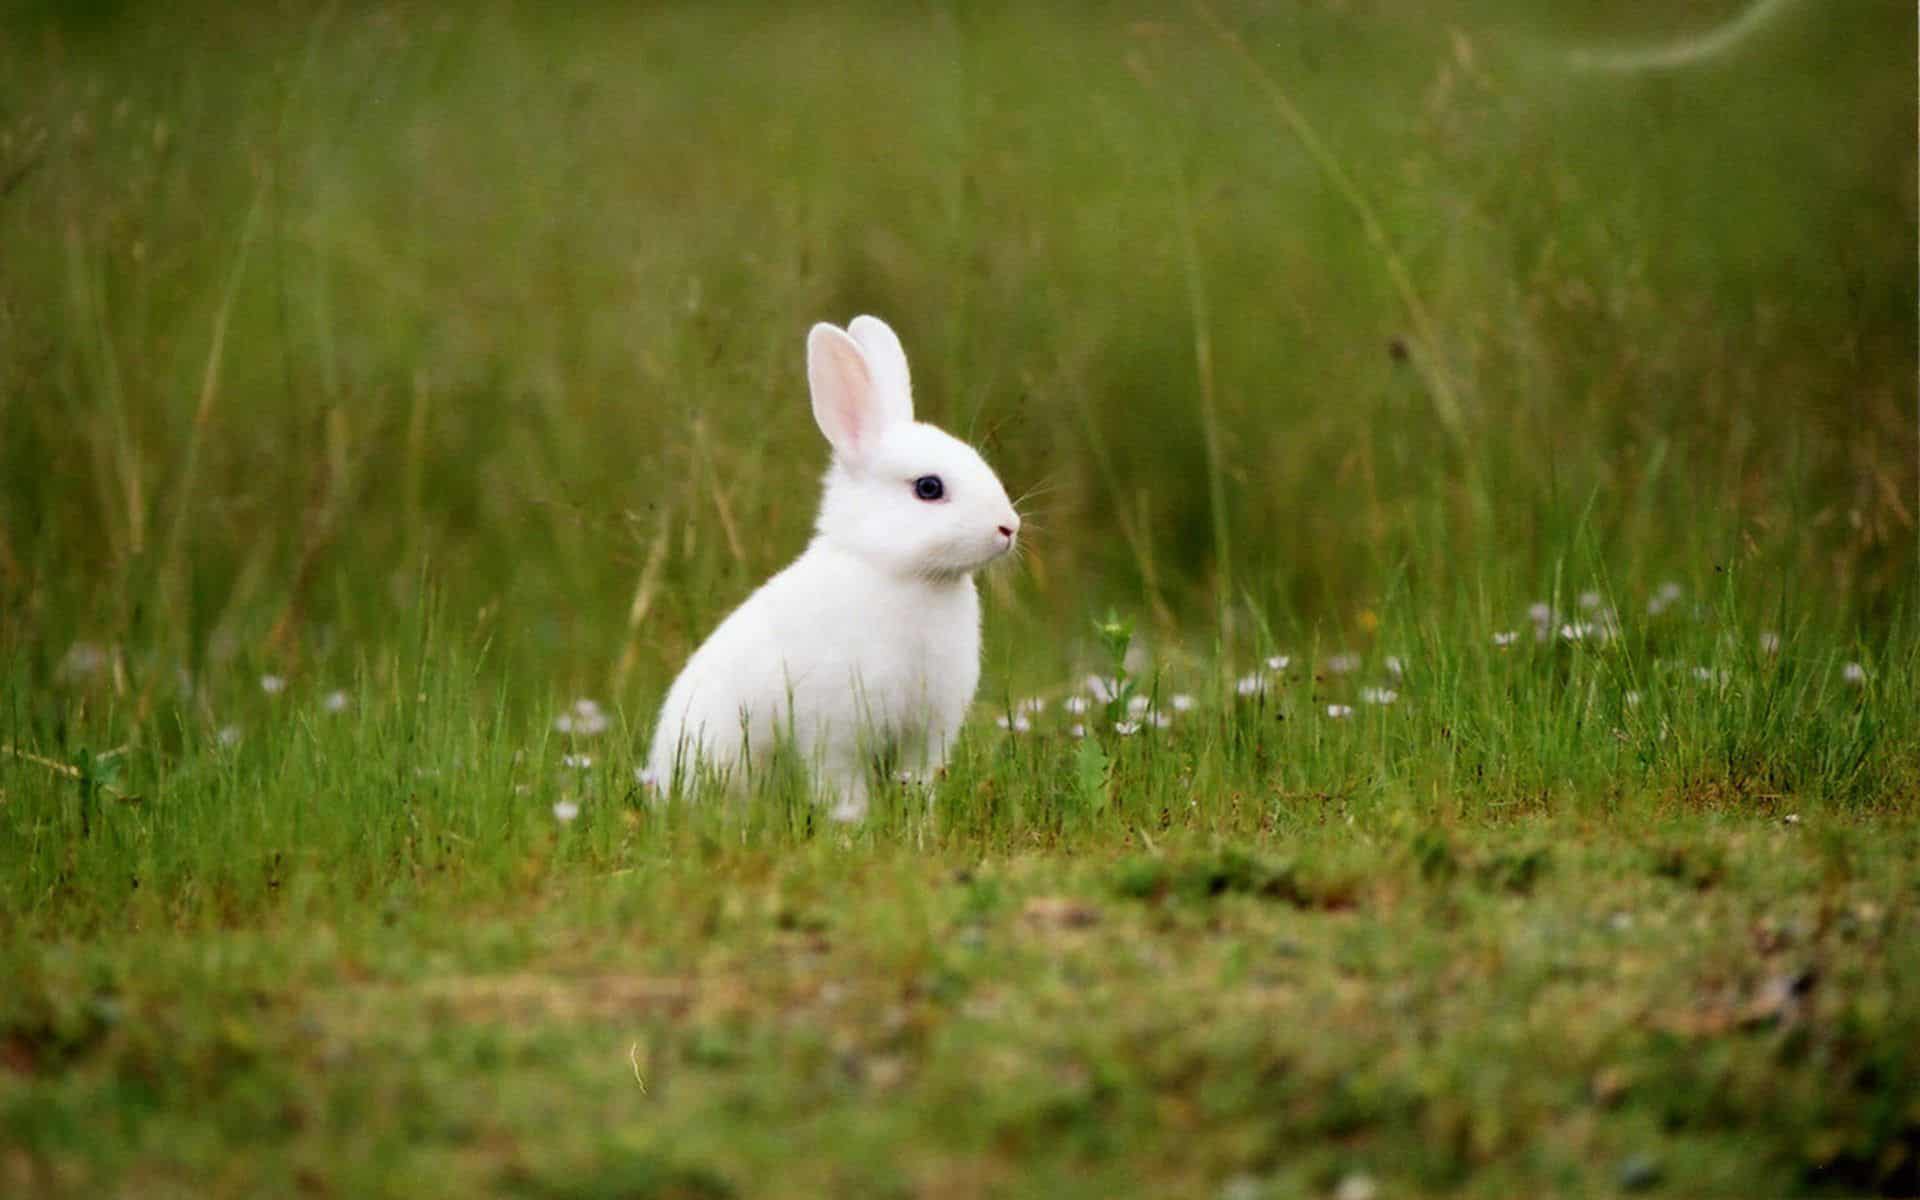 Tải hình ảnh thỏ đẹp